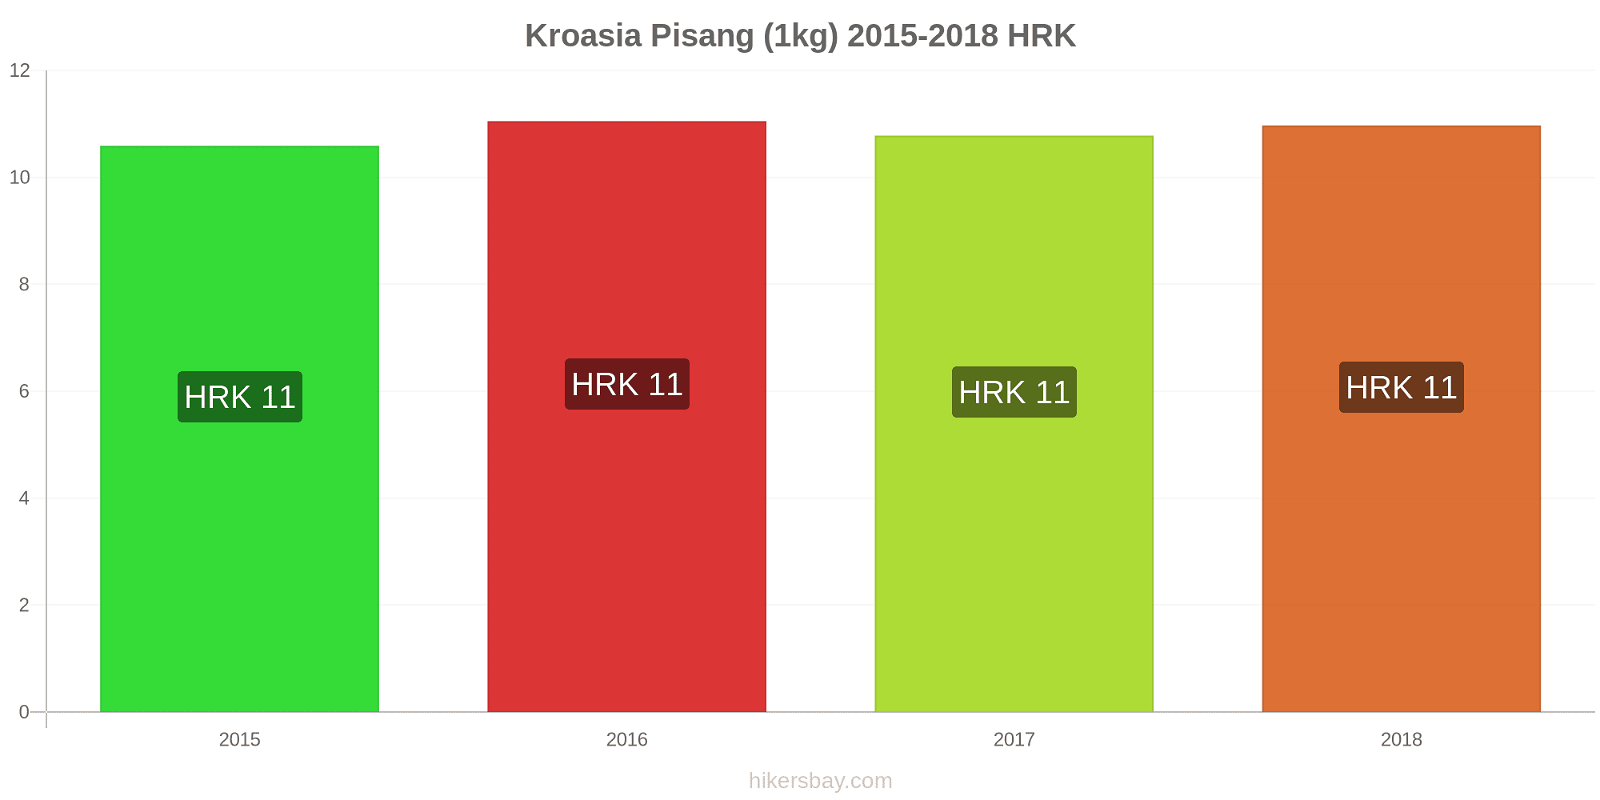 Kroasia perubahan harga Pisang (1kg) hikersbay.com